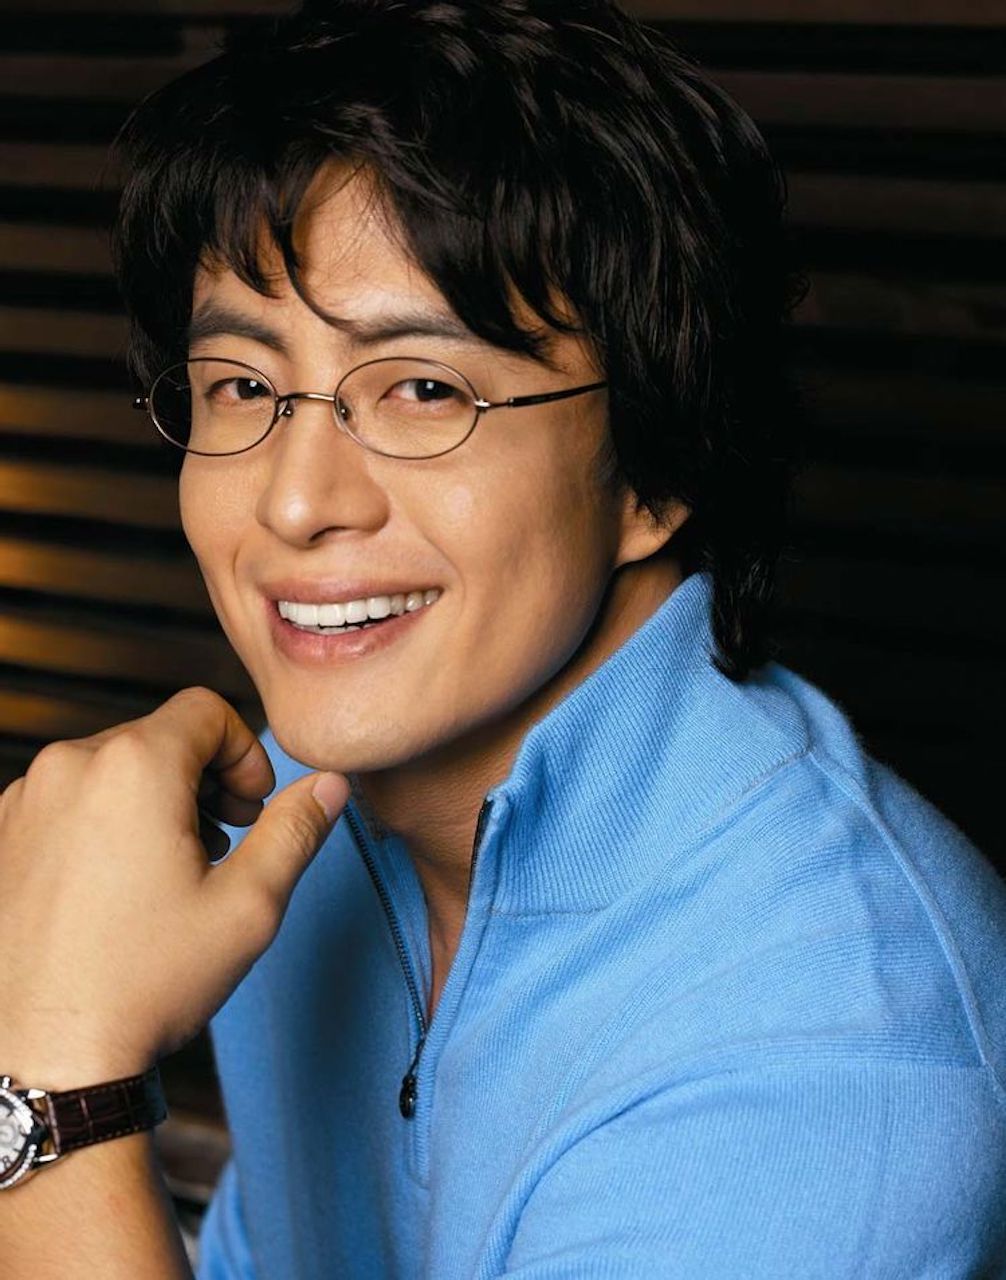 Bae Yong Joon được biết đến rộng rãi với vai diễn mang tính biểu tượng trong bộ phim truyền hình ăn khách Bản tình ca mùa đông, từng thành lập KeyEast Entertainment vào năm 1996. Công ty hiện đang quản lý khá nhiều tên tuổi nổi bật như Hwang In Youp, Kim Dong-wook, Lee Dong-hwi… Hiện tại, nam diễn viên không còn hoạt động nghệ thuật nhiều mà tập trung cho công việc kinh doanh chuỗi nhà hàng sang trọng.